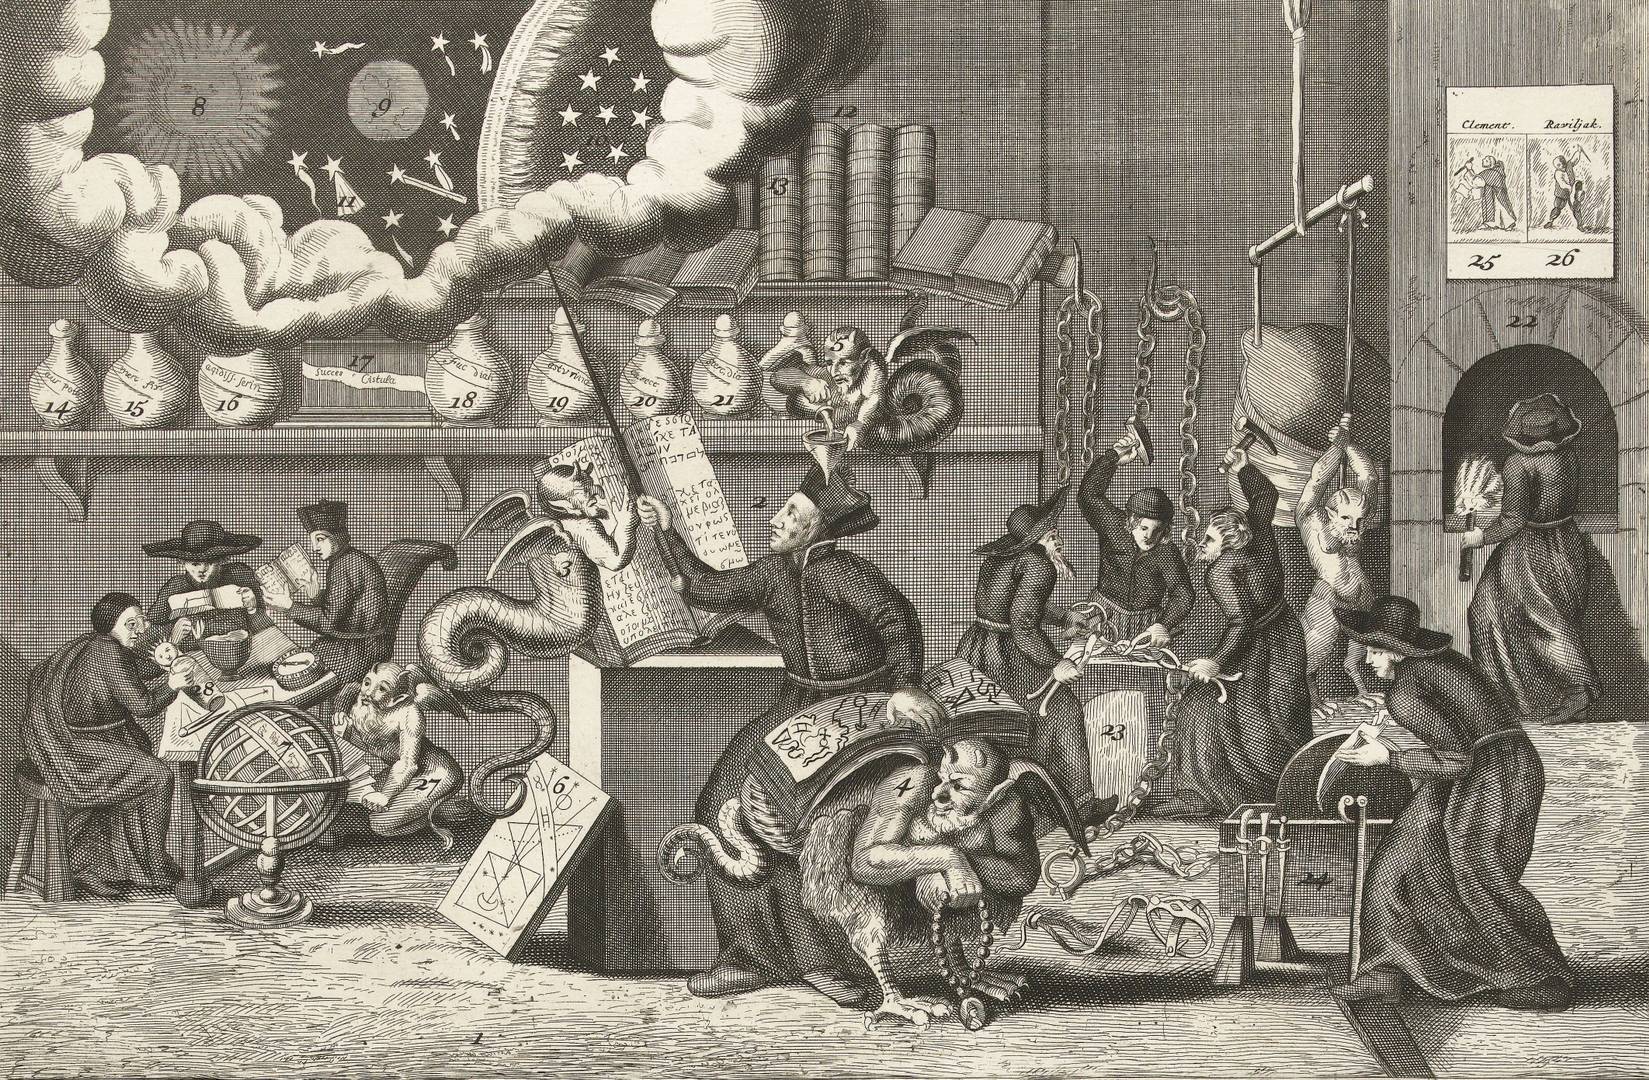 Пол ван Сомер II (приписывается). Карикатура о дьявольском искусстве отца Петерса (Эдварда Петре), который вместе с католиками и бесами занят работой в алхимической лаборатории. 1689